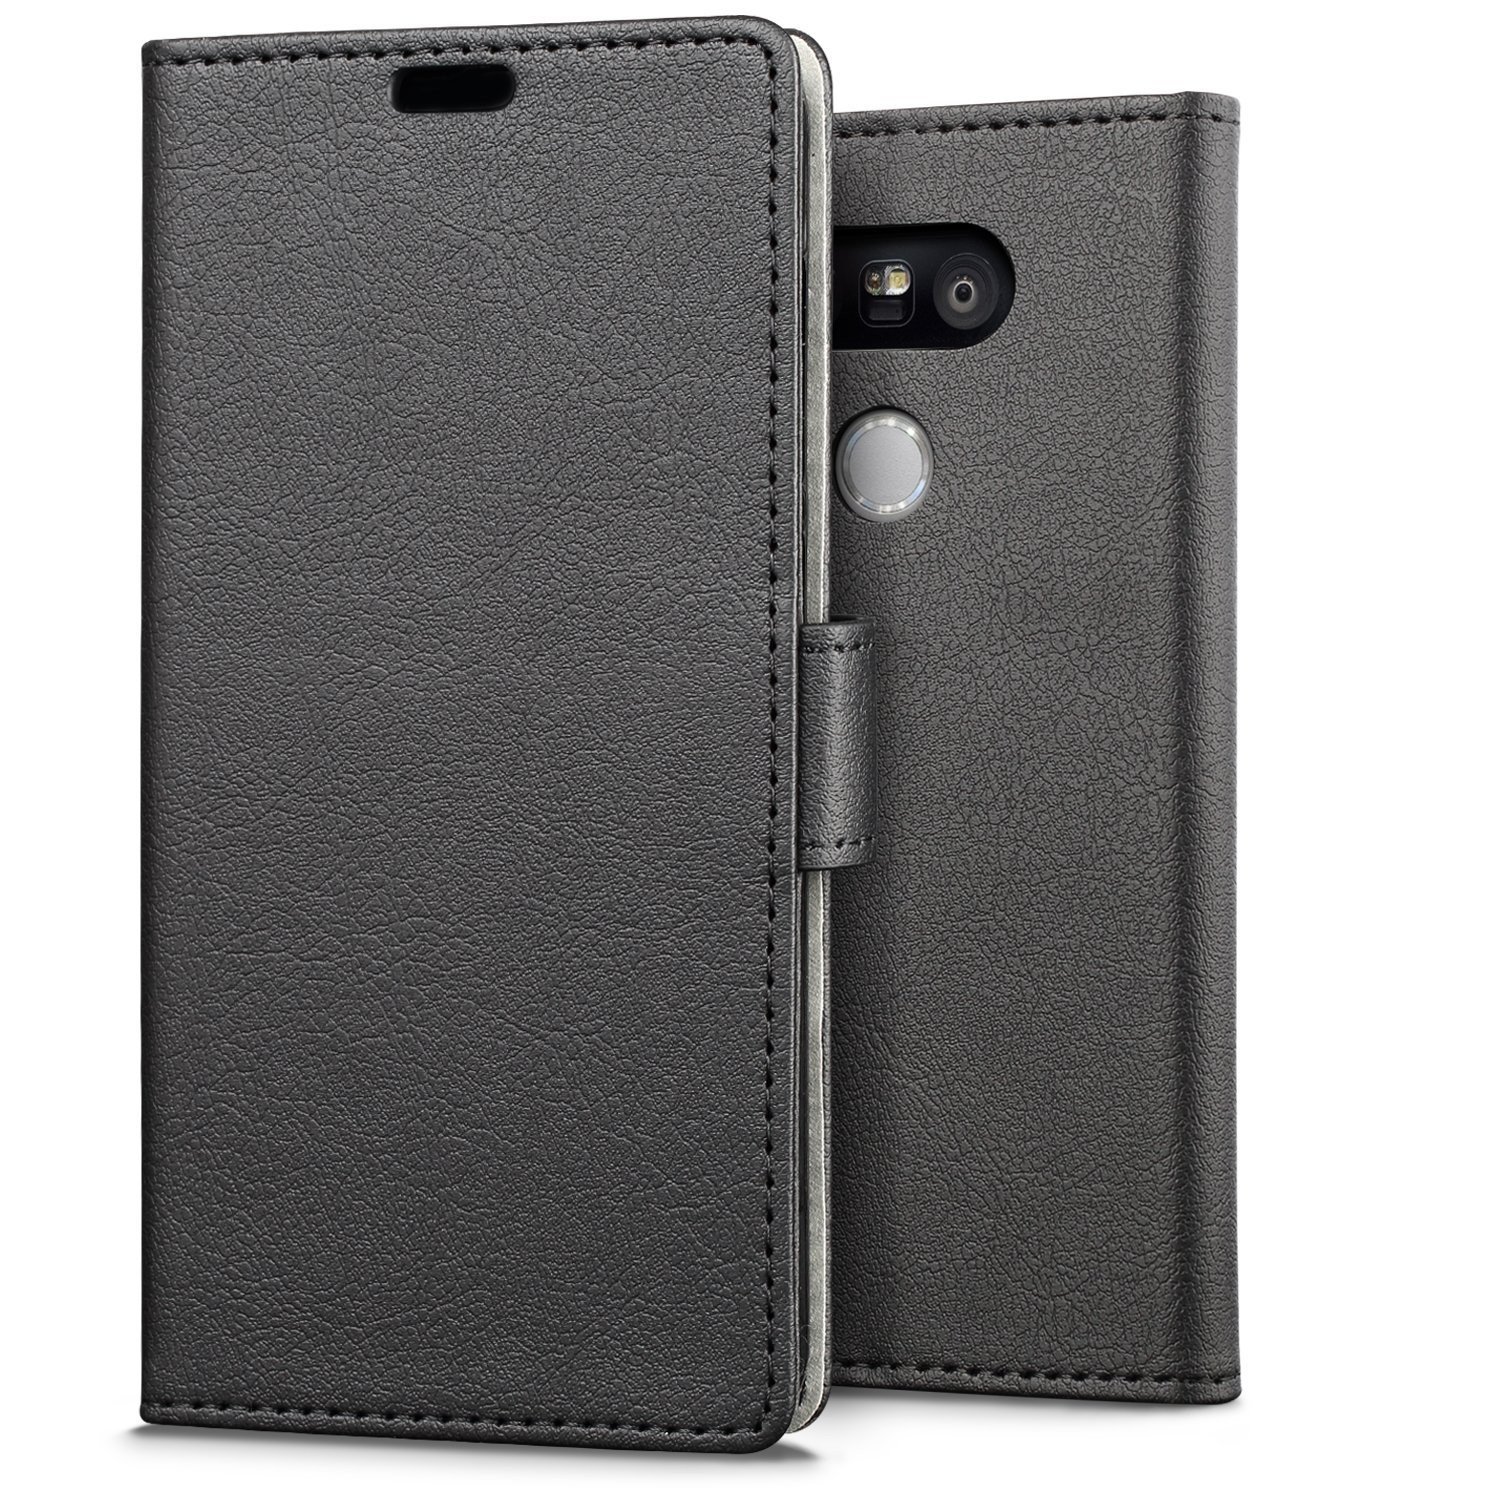 Hoesje LG G5 flip wallet zwart